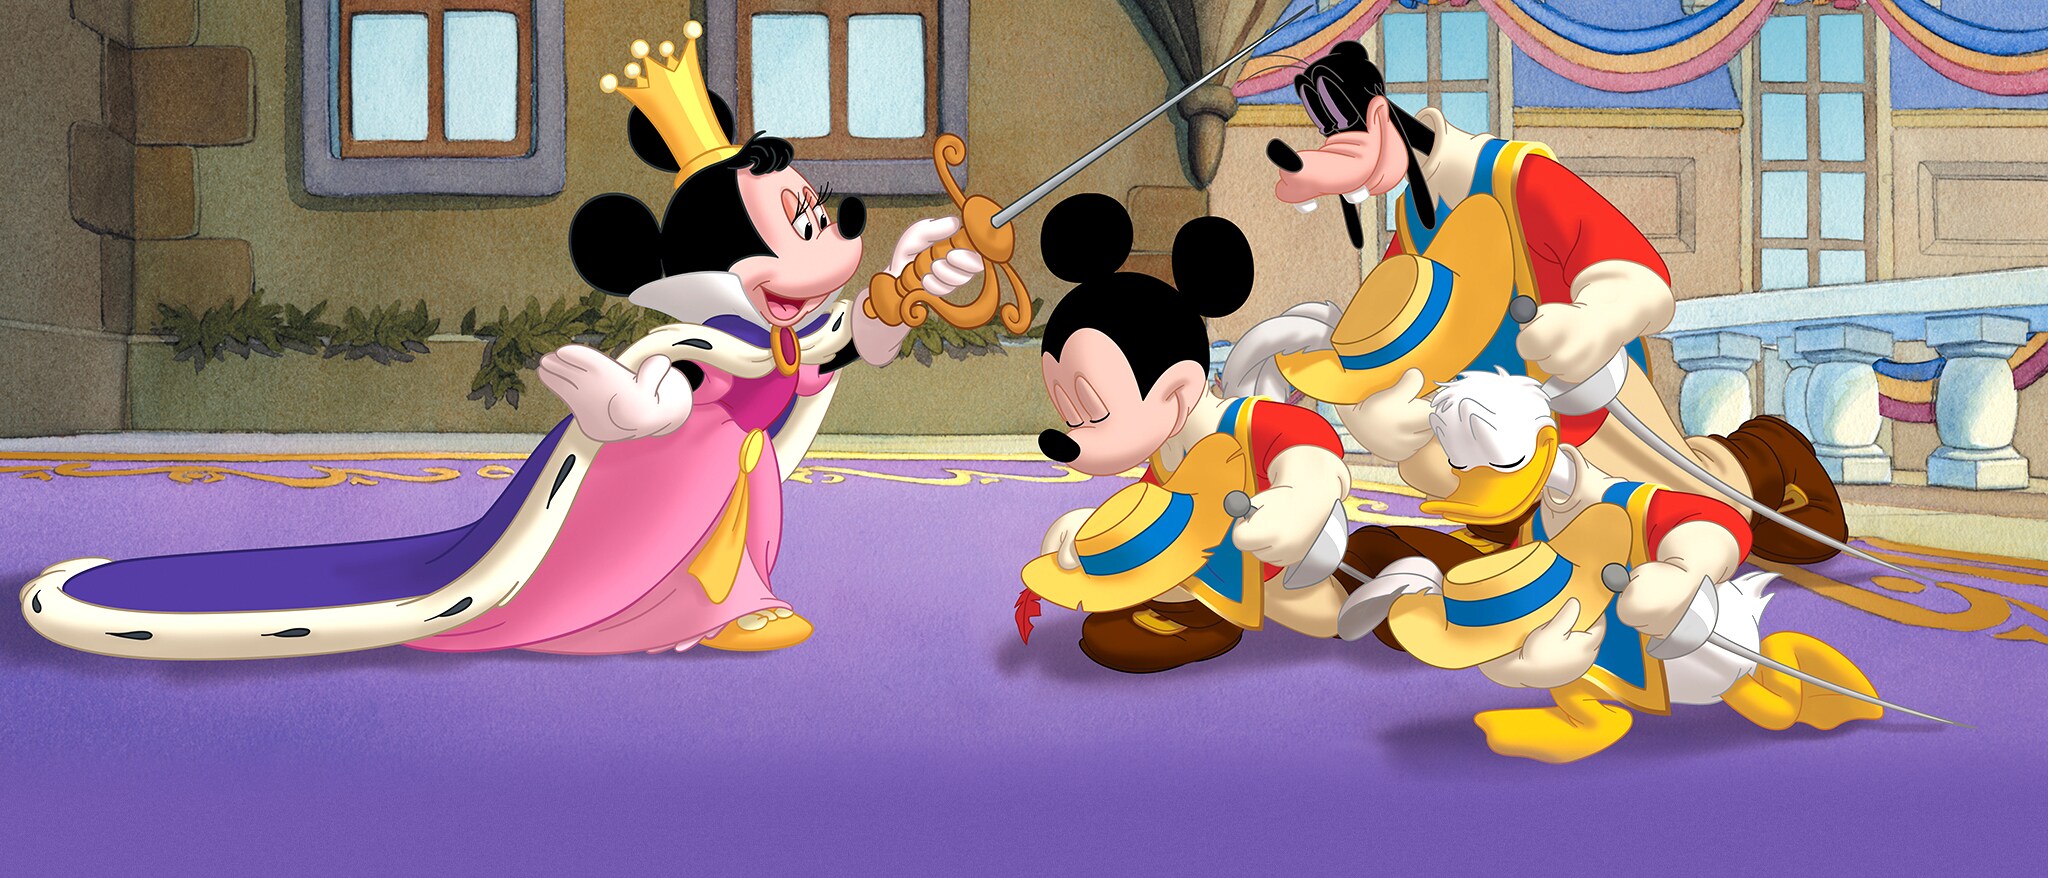 Mickey, Donald, Goofy: The Three Musketeers Hero